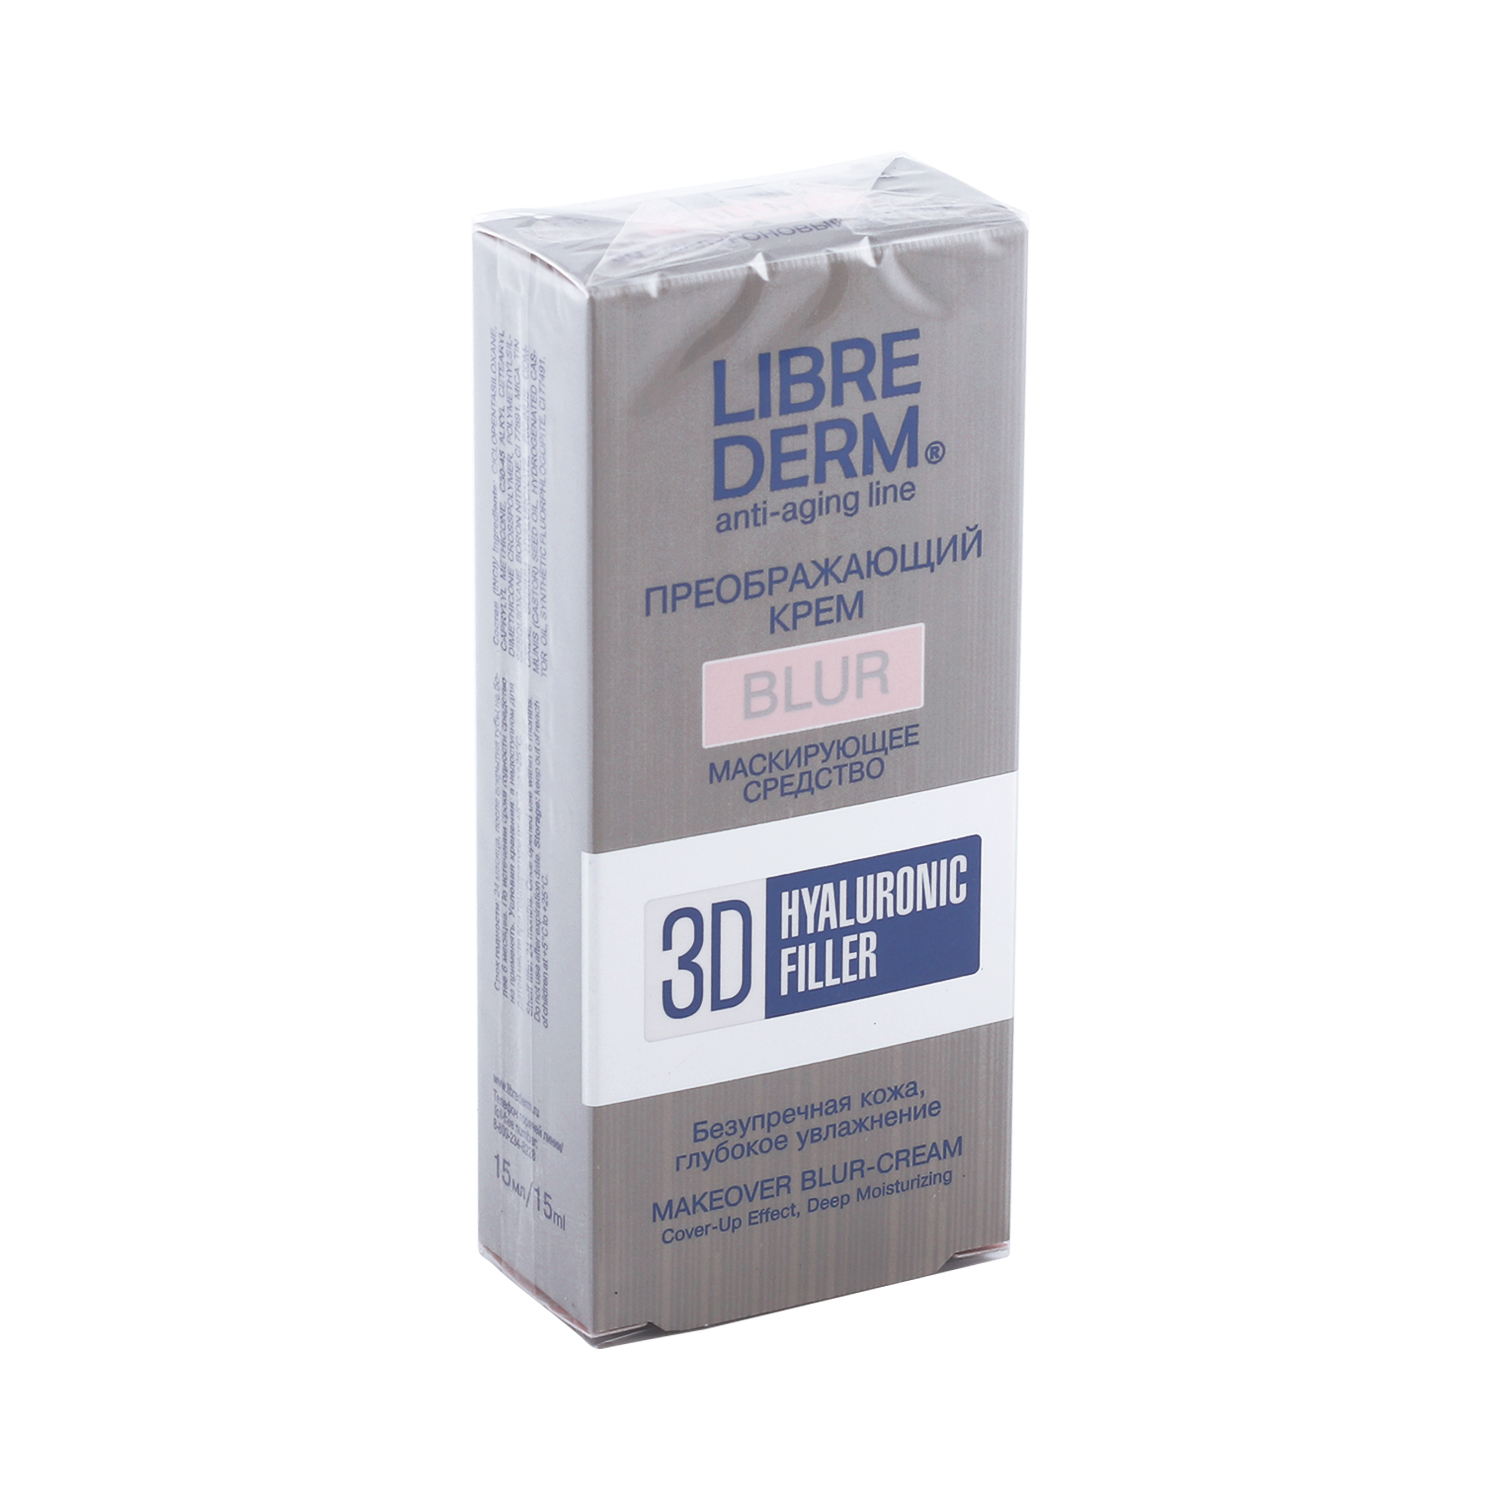 Купить Либридерм крем-блур д/лица преображающий гиалуроновый 3Д филлер 15мл, Дина+